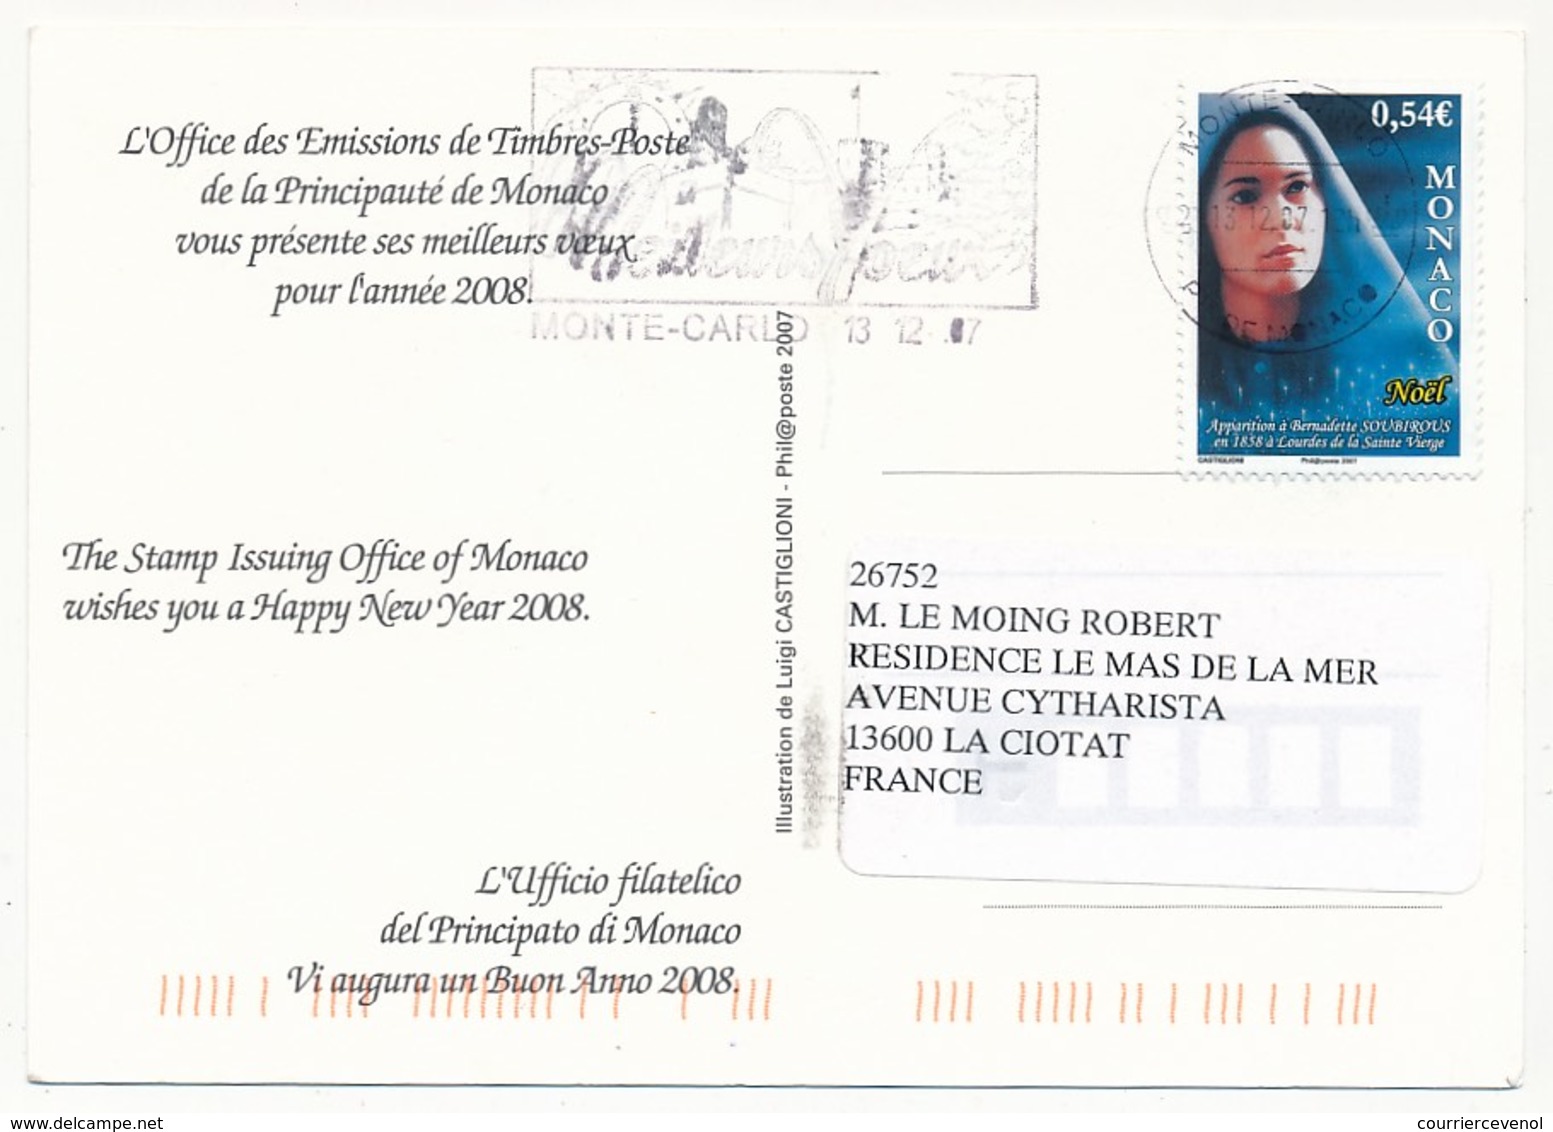 MONACO - 8 cartes de Voeux de l'Office Philatélique de Monaco - Voir scans